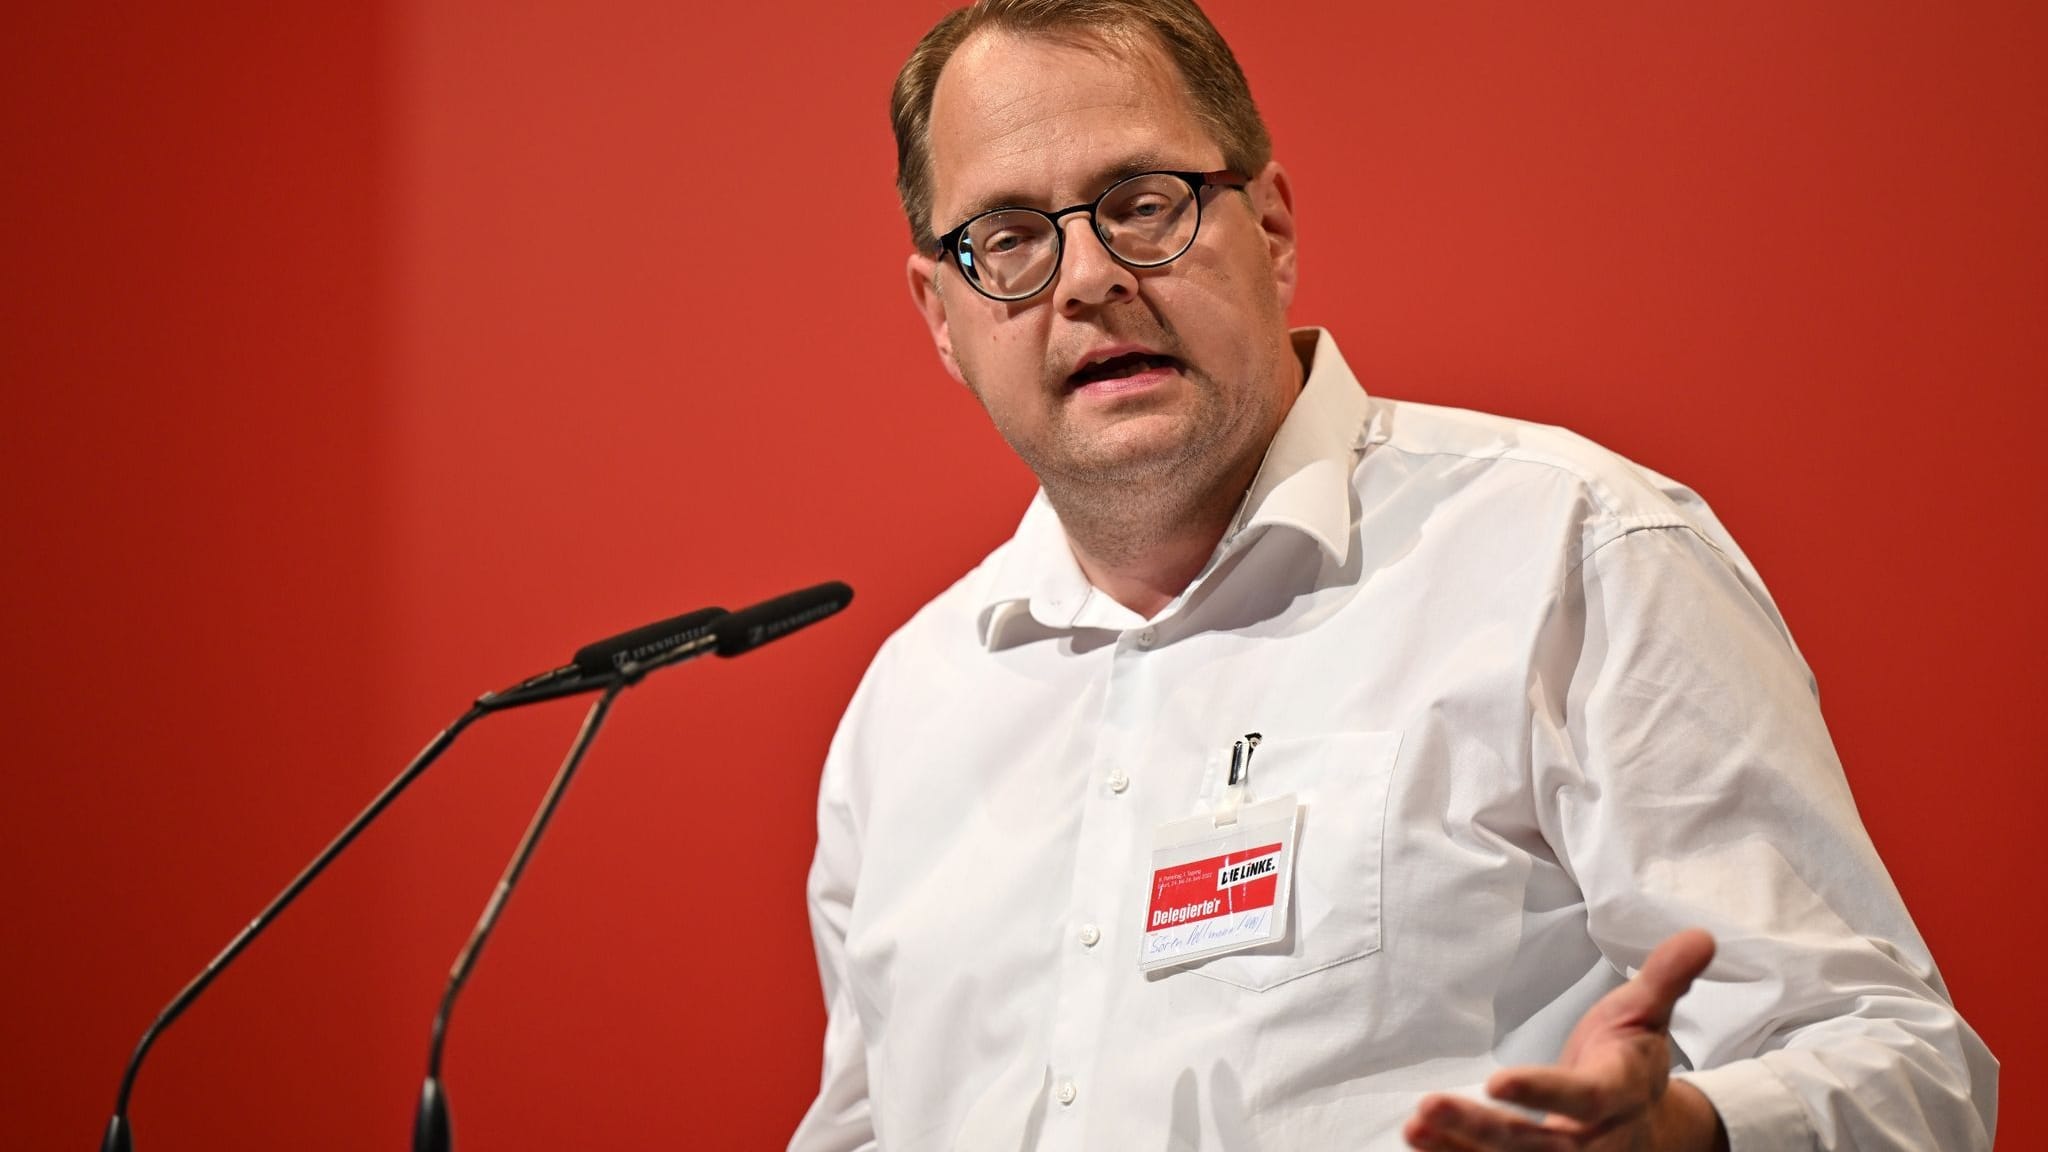 Linken-Politiker Pellmann zeigt Lauterbach wegen Untreue an